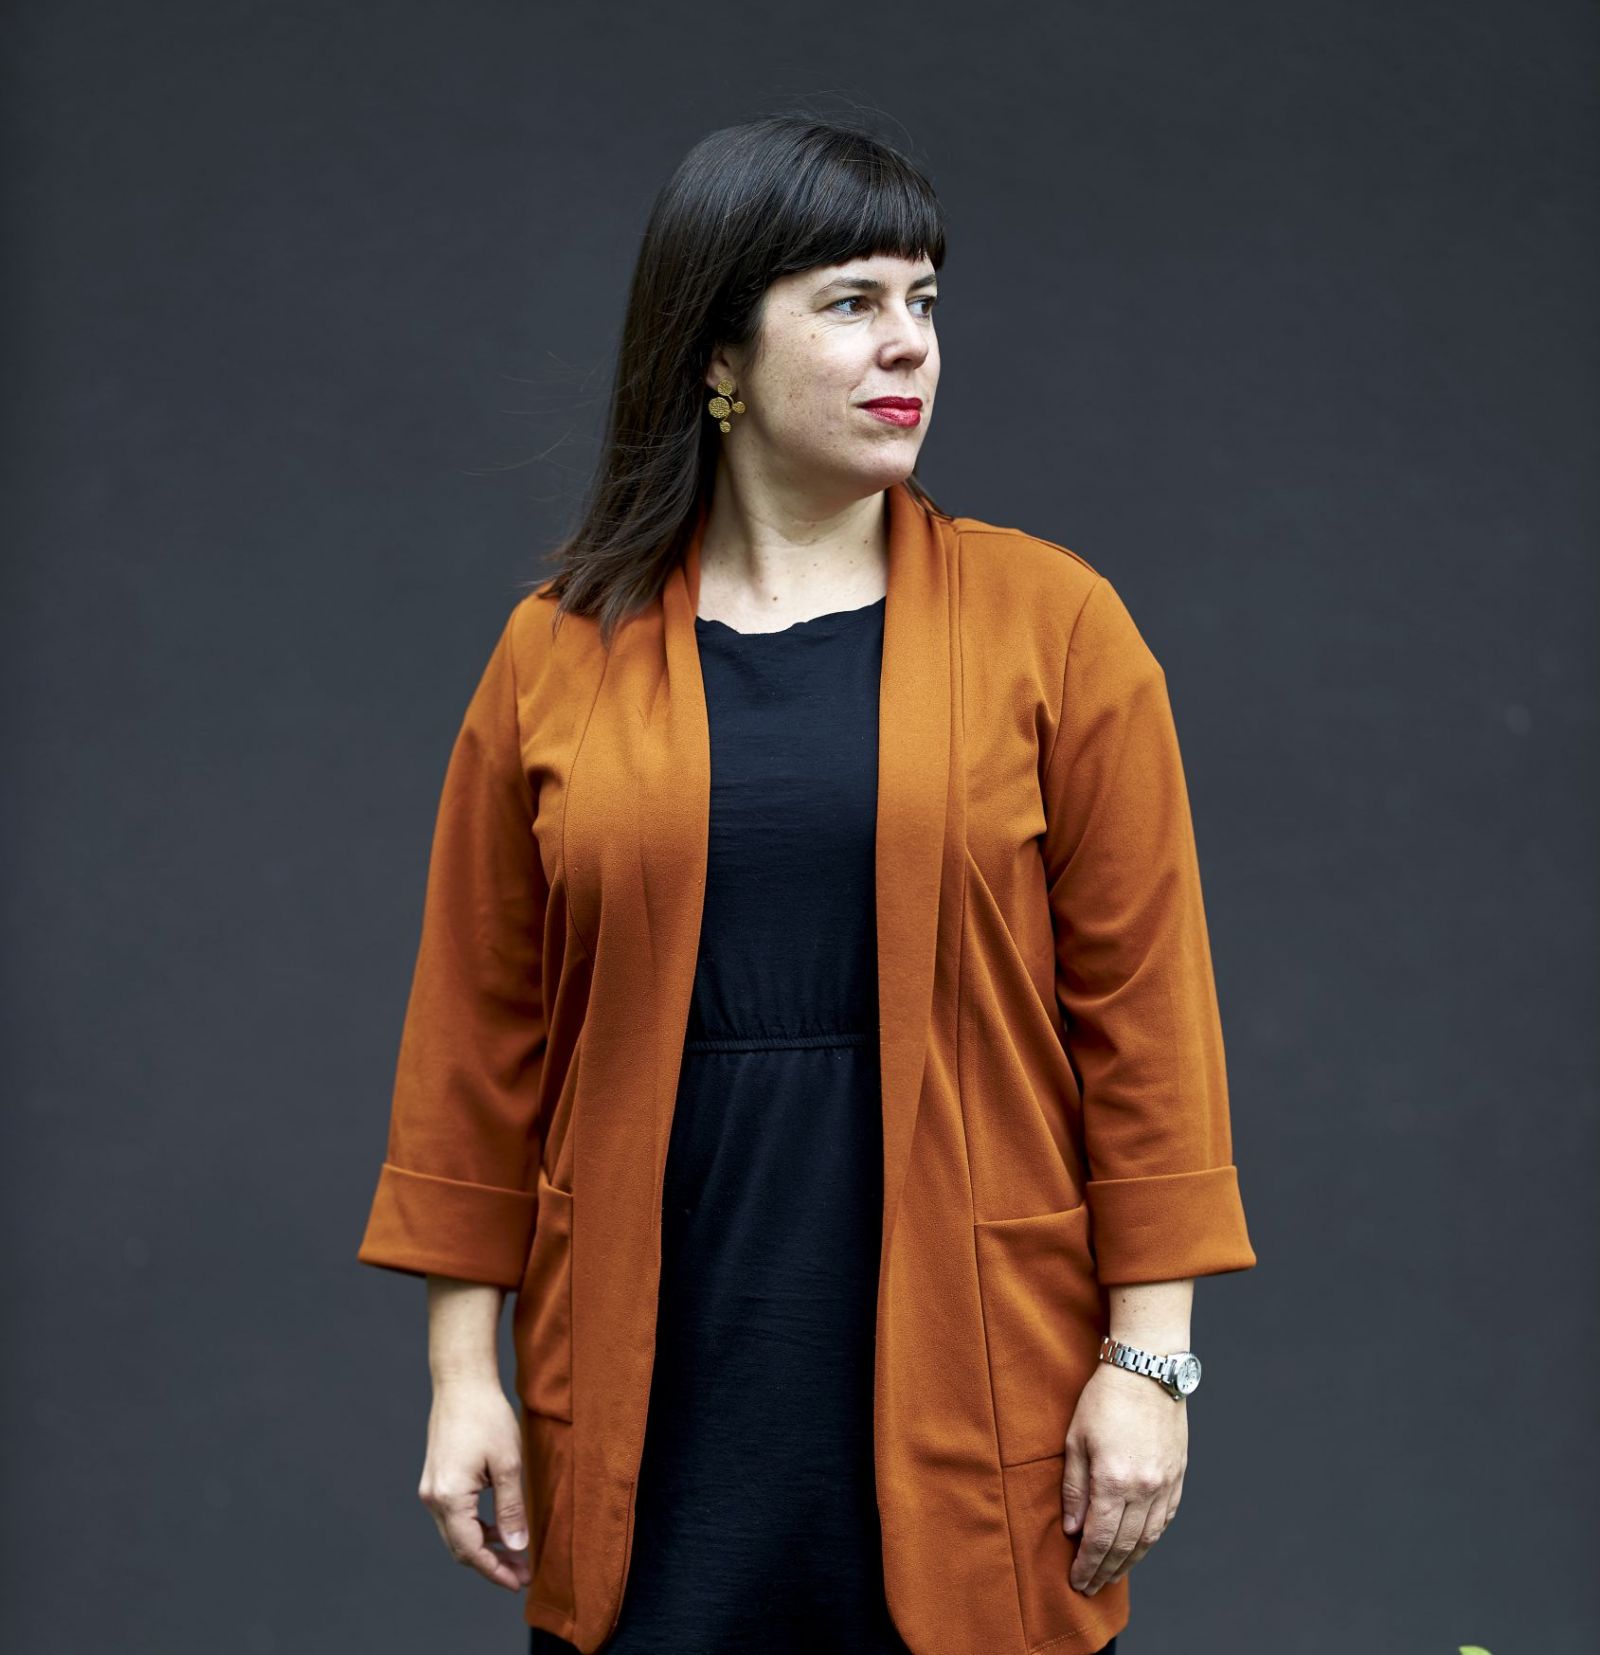 Woman in orange cardigan